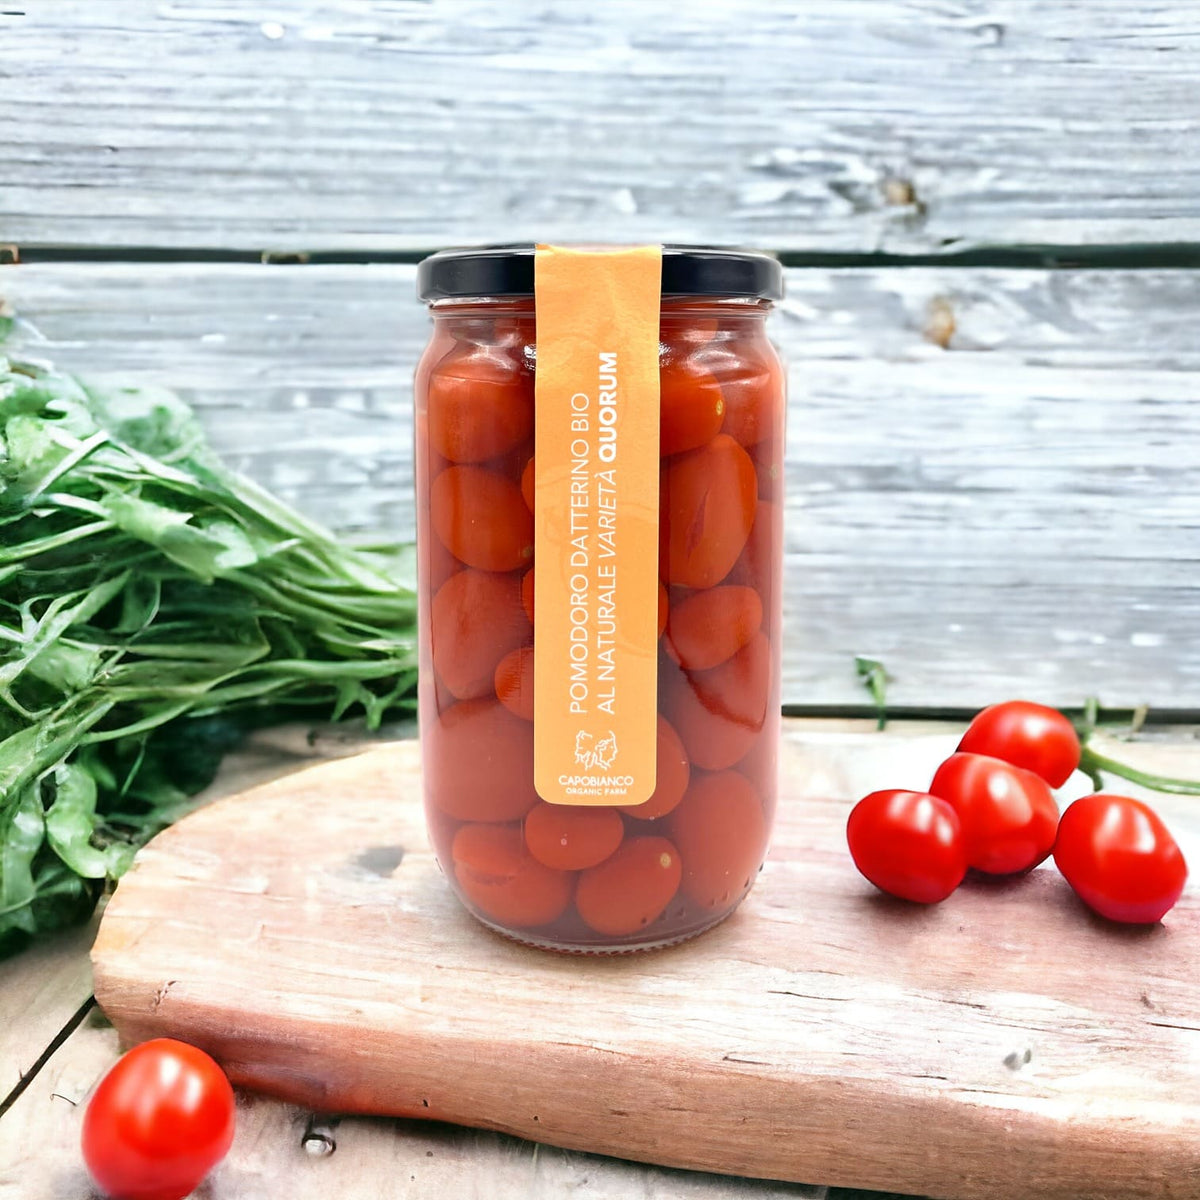 Tomates variété Datterino biologiques cueillies à la main lorsqu'elles sont complètement mûres, lavées et emballées avec de l'eau et du sel dans des bocaux en verre.